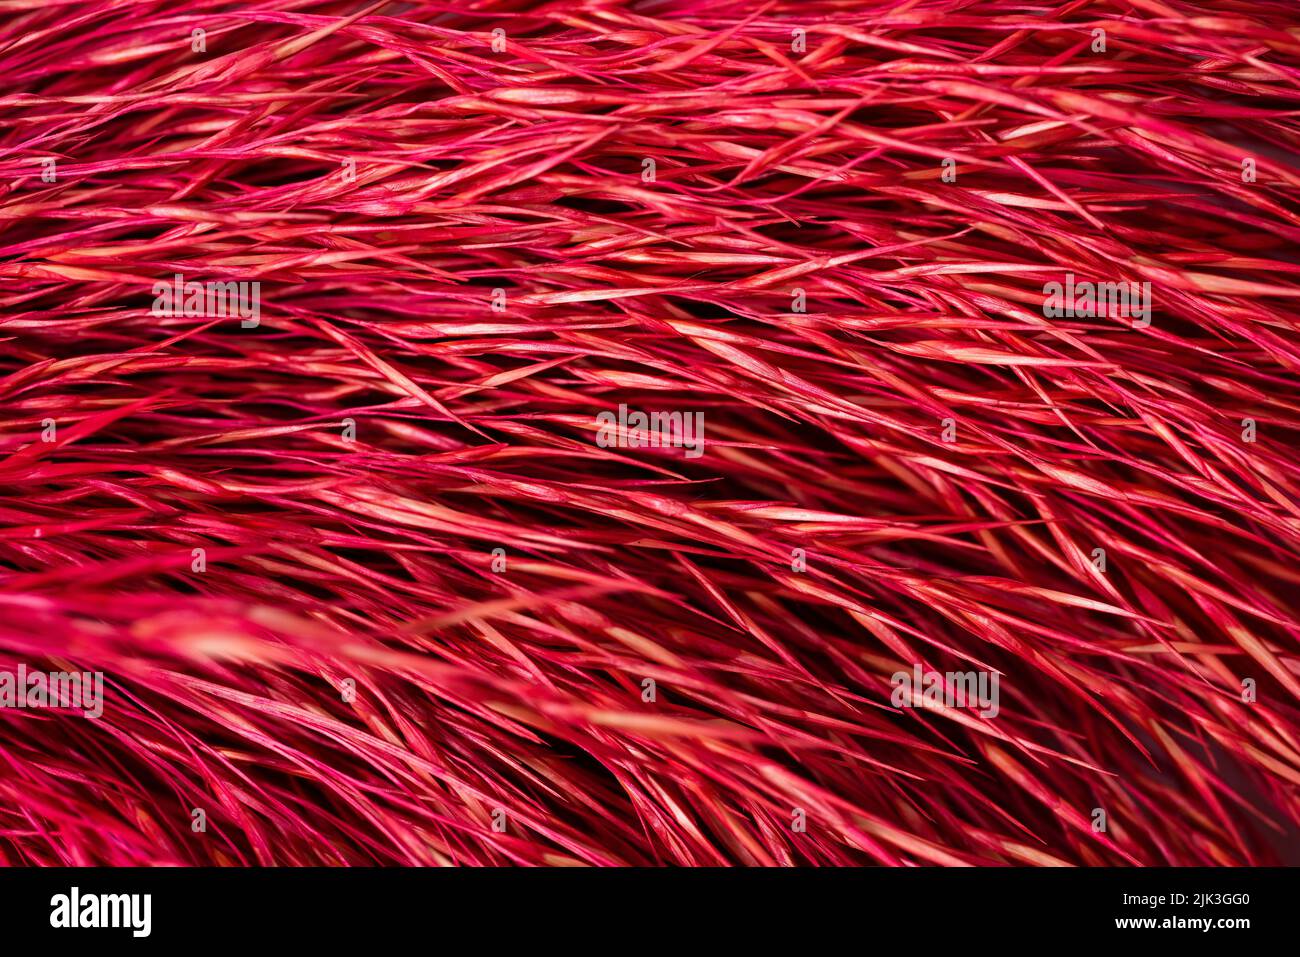 Fotografía macro de patrón de paja seca de color rojo. Fondo de textura de rayas horizontales abstractas. . Fotografía de alta calidad Foto de stock